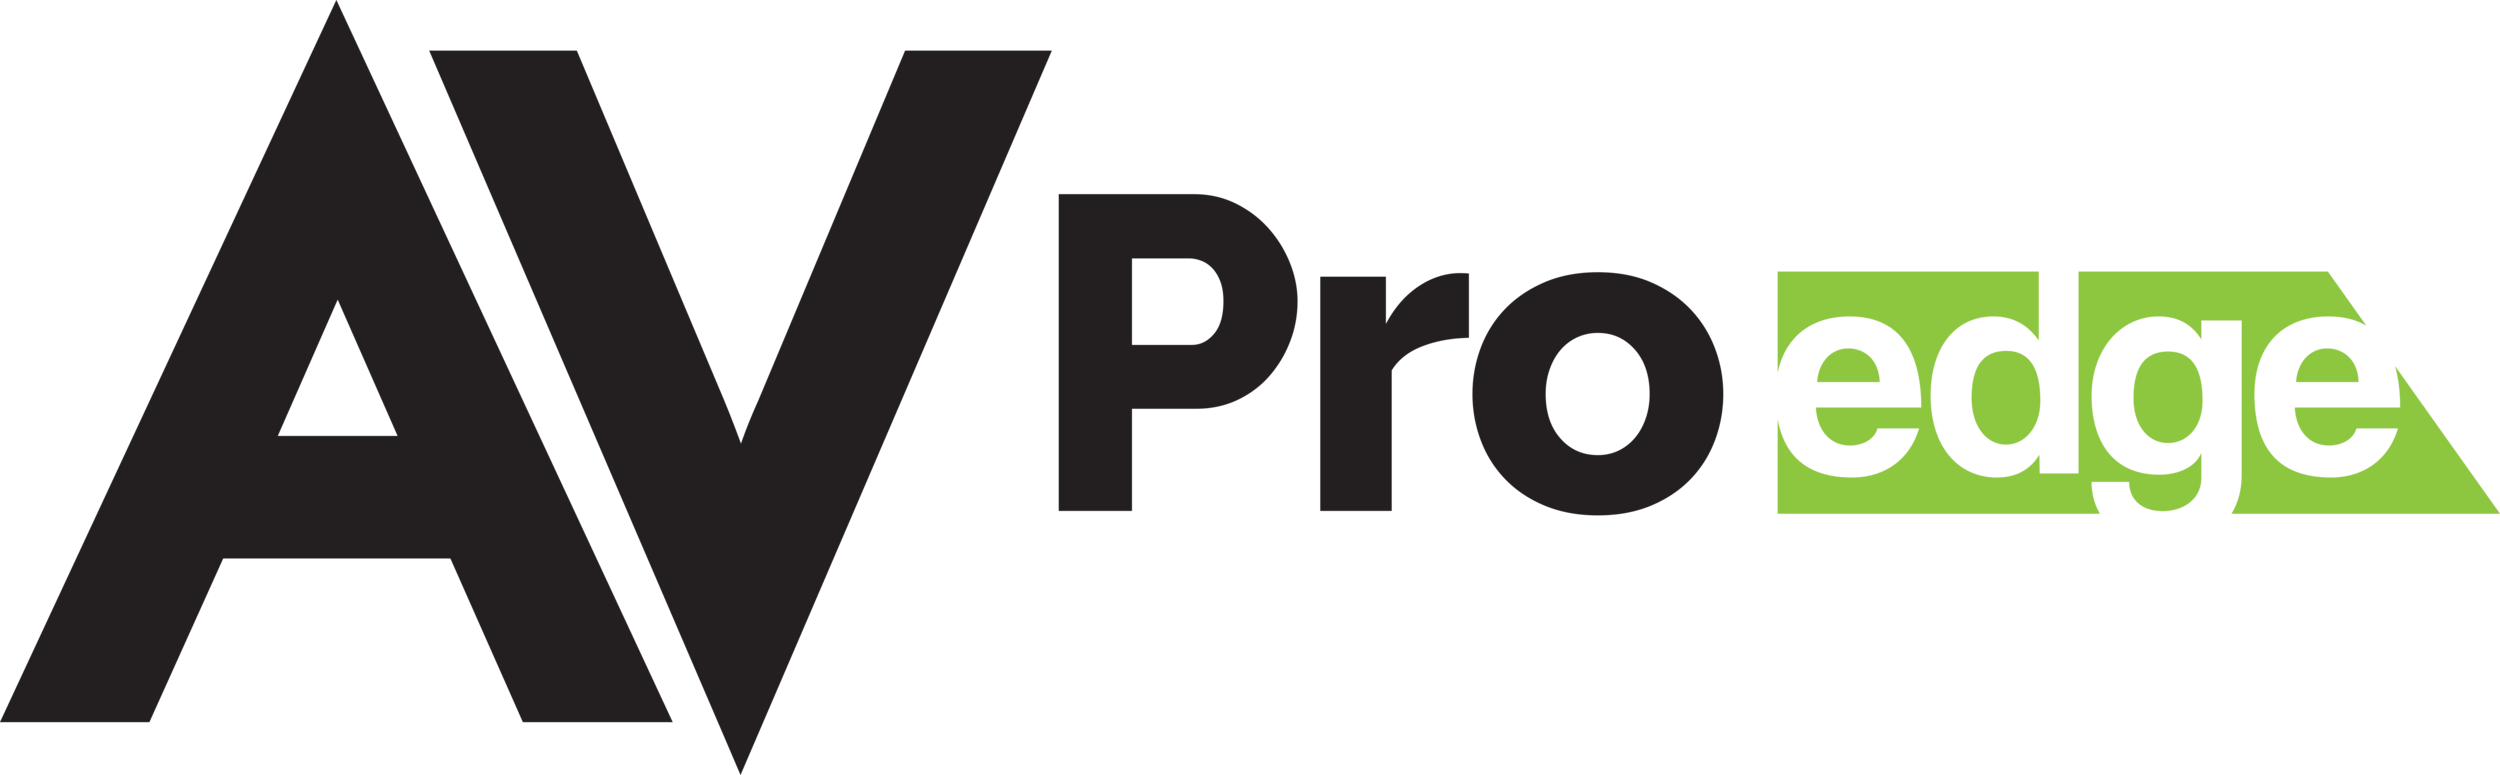 AVPro Edge Logo.png